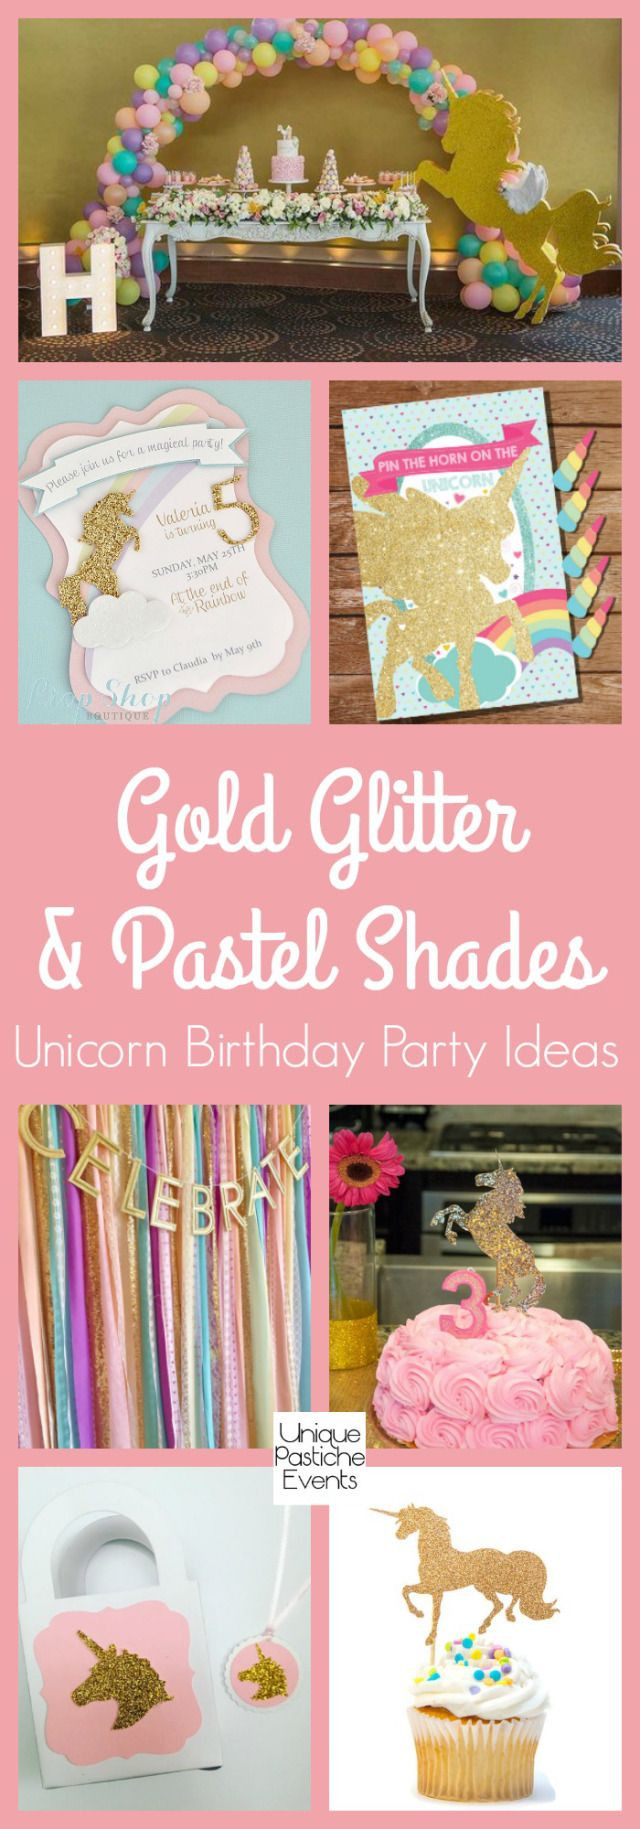 Coolest Unicorn Party Ideas
 Best 25 Unicorn birthday parties ideas on Pinterest